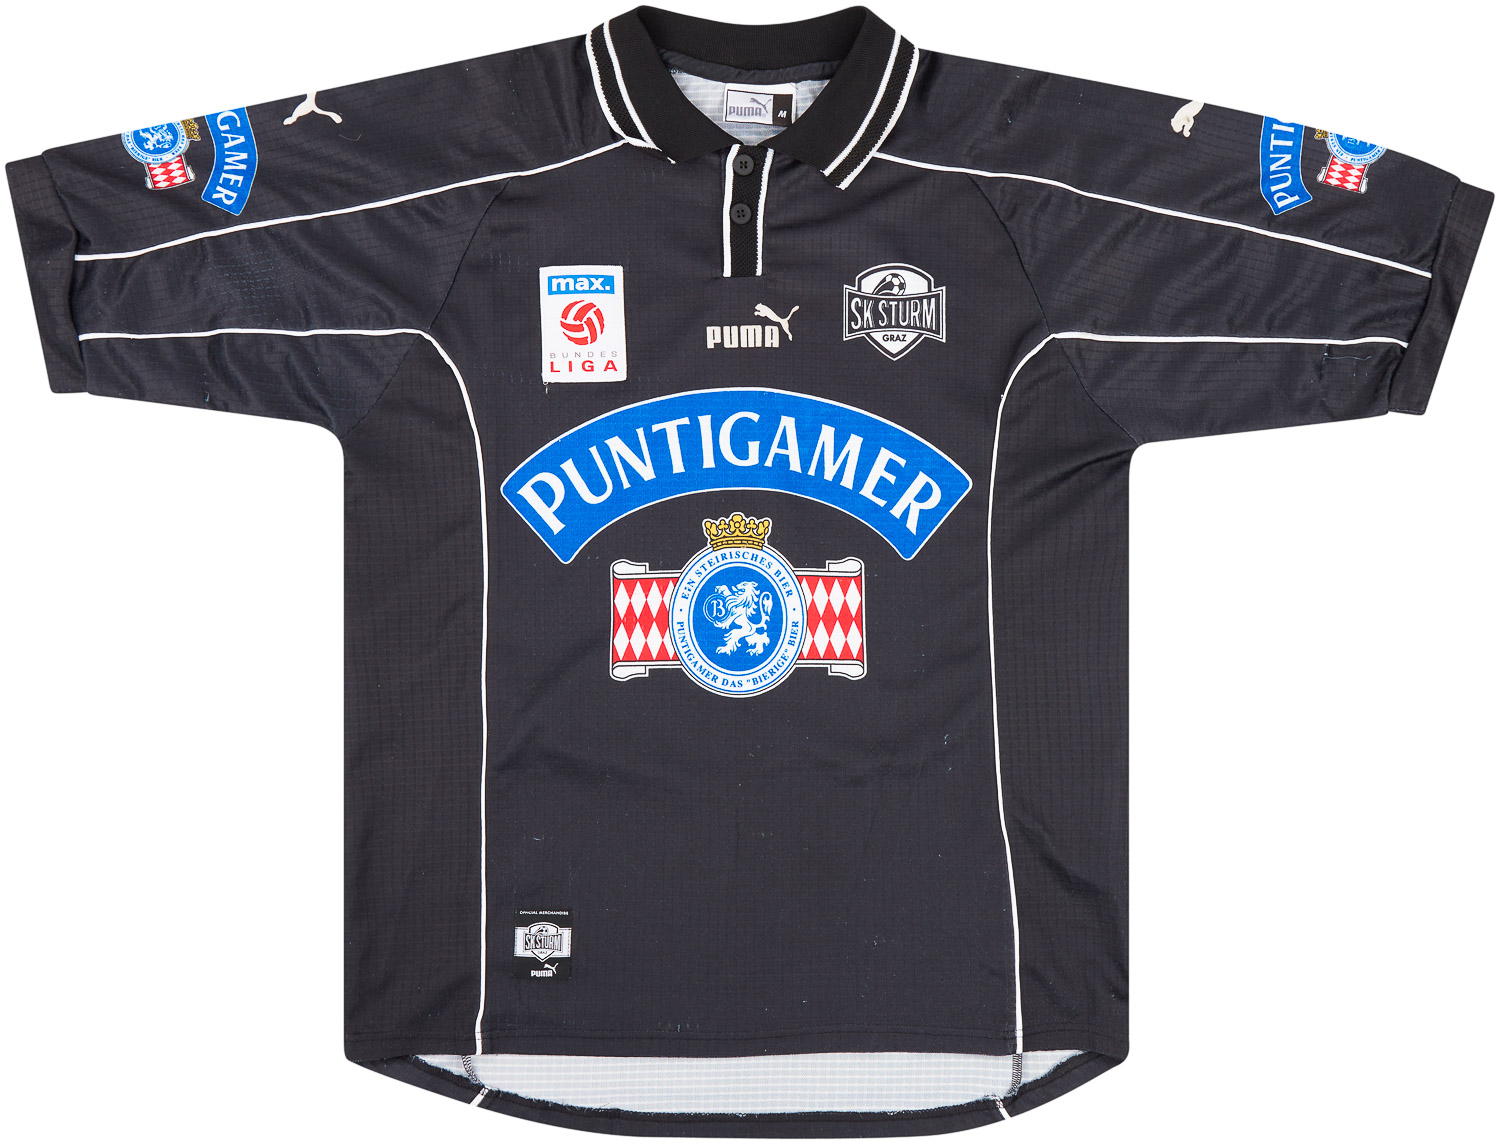 SK Sturm Graz  Visitante Camiseta (Original)